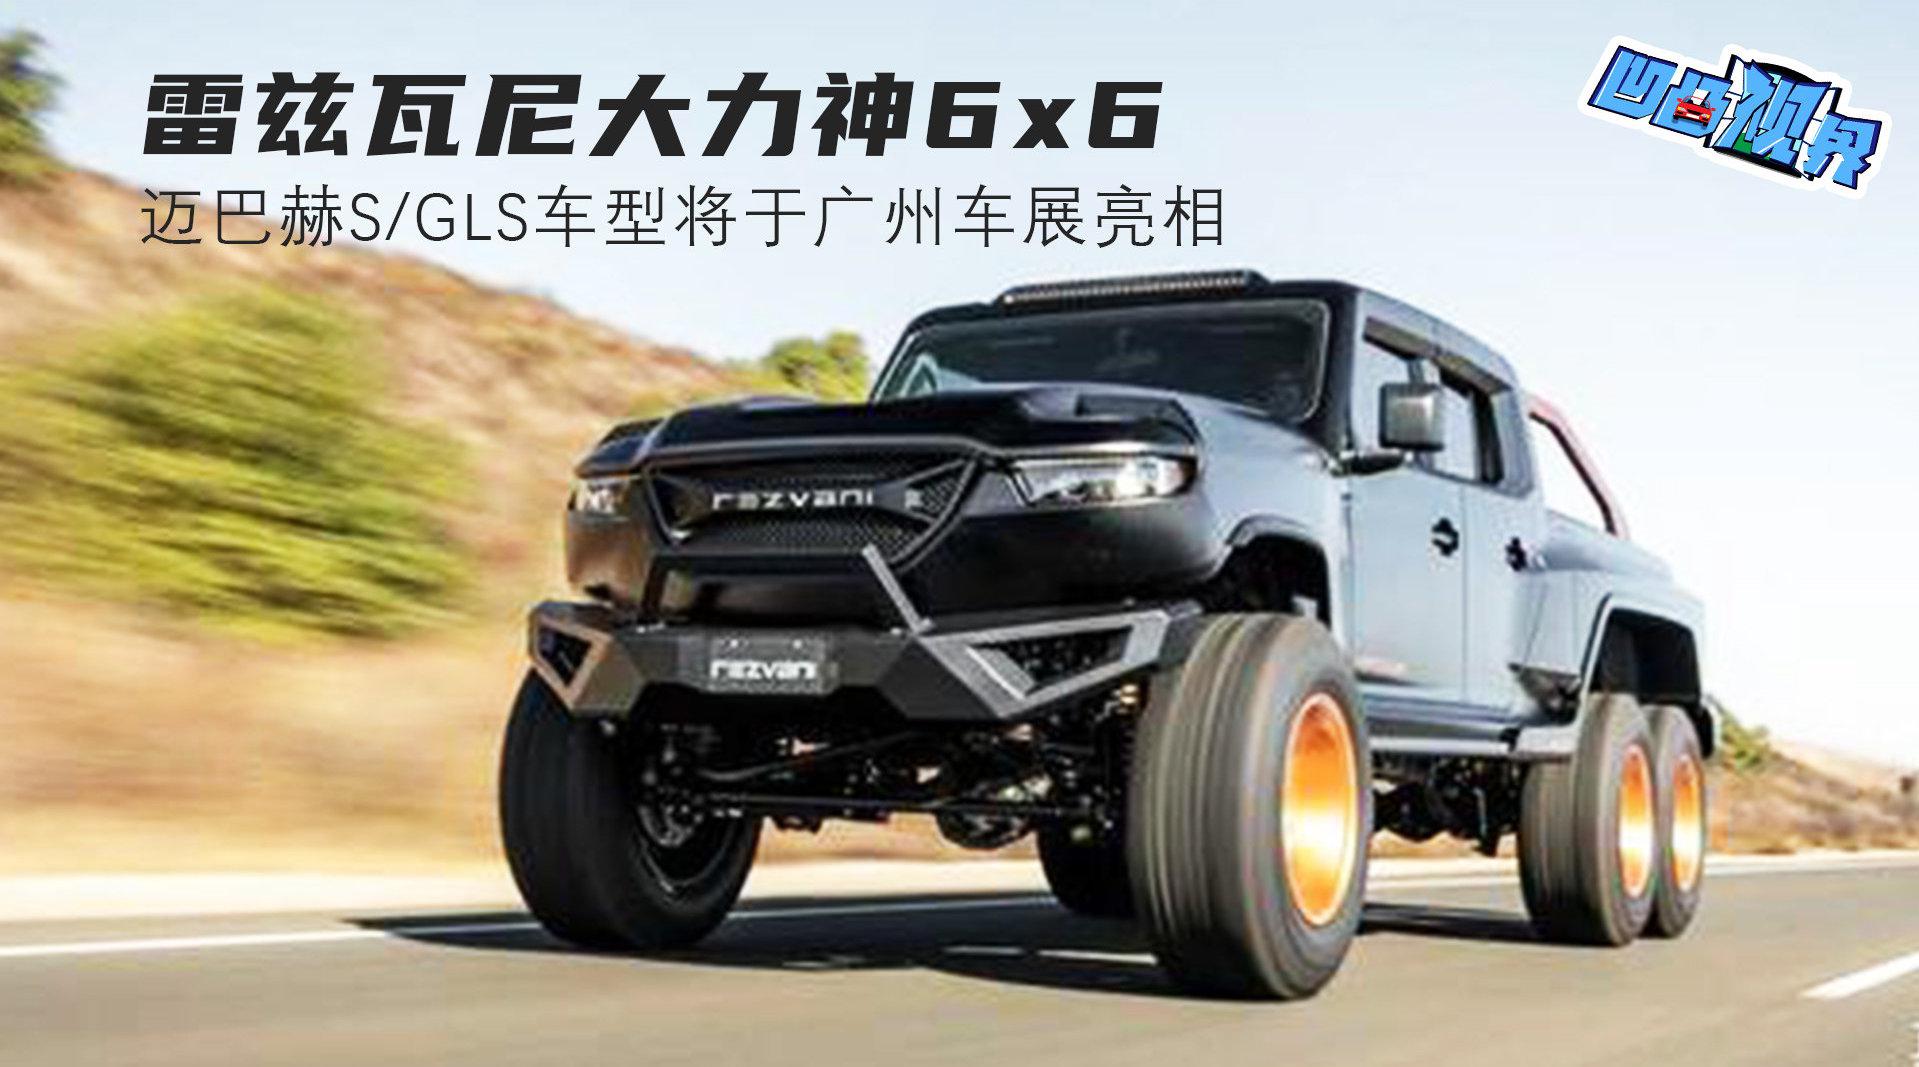 雷兹瓦尼大力神6x6 迈巴赫S/GLS车型将于广州车展亮相